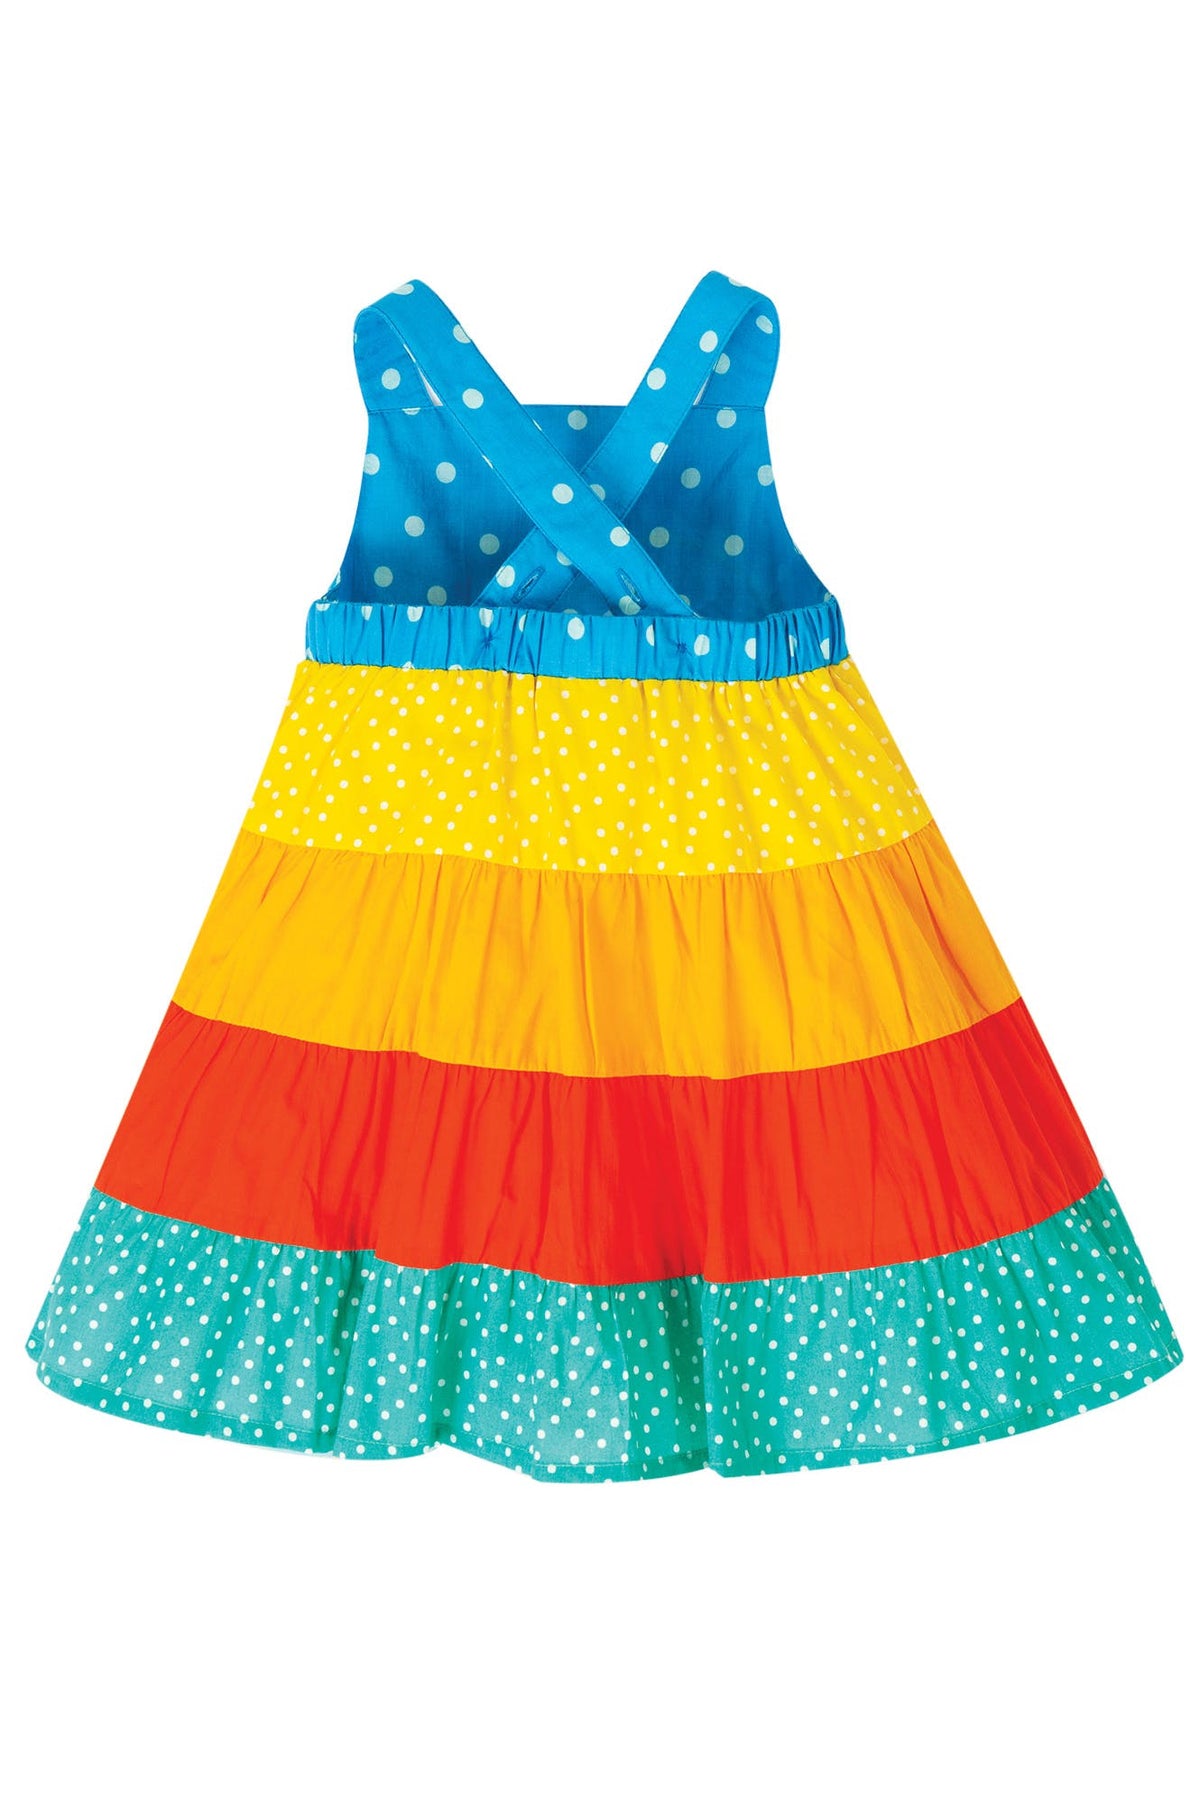 Kleid Regenbogen mit Sonnen-Applikation ( 0-3, 3-6 Monate) von Frugi